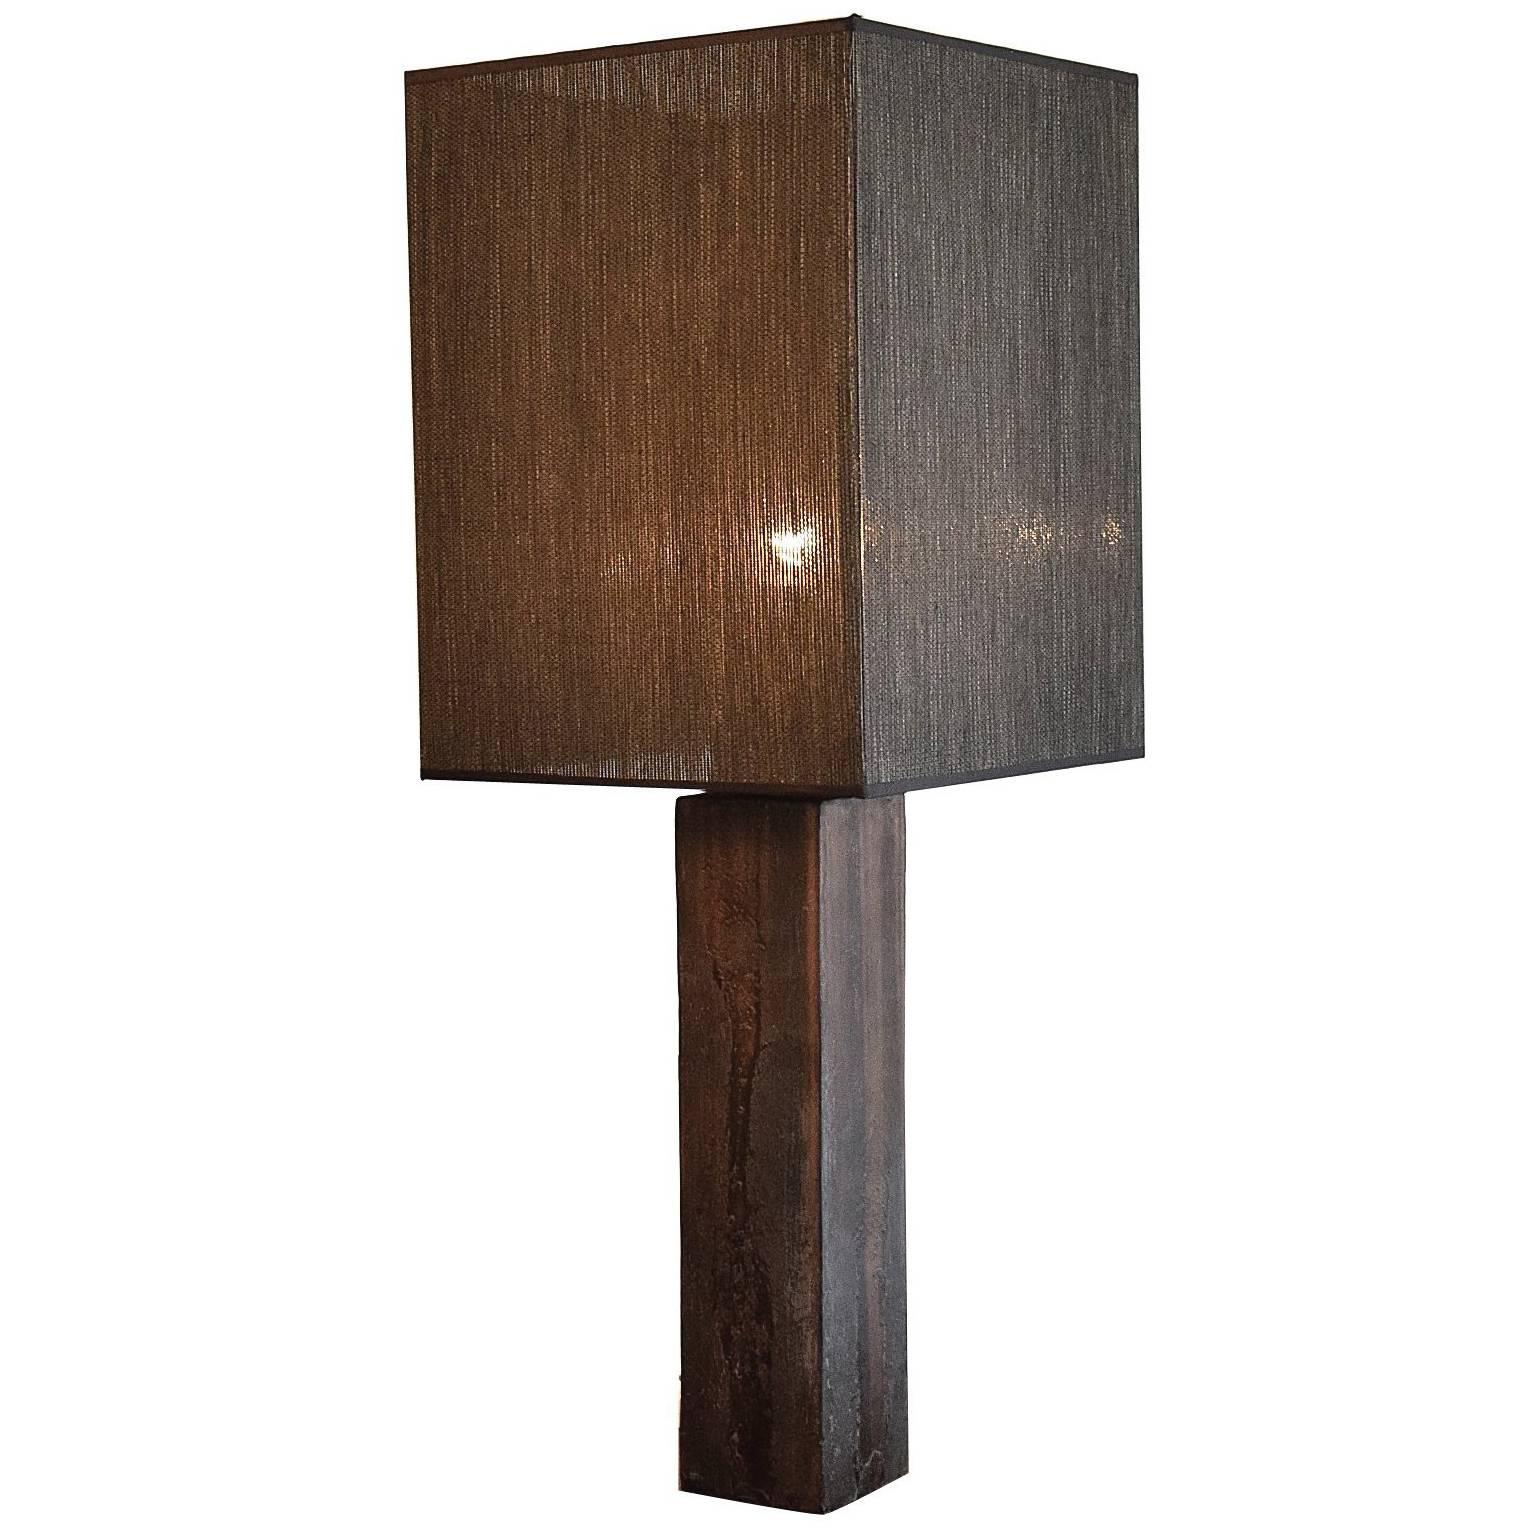 Marcello Fantoni Ceramic Studio Table Lamp